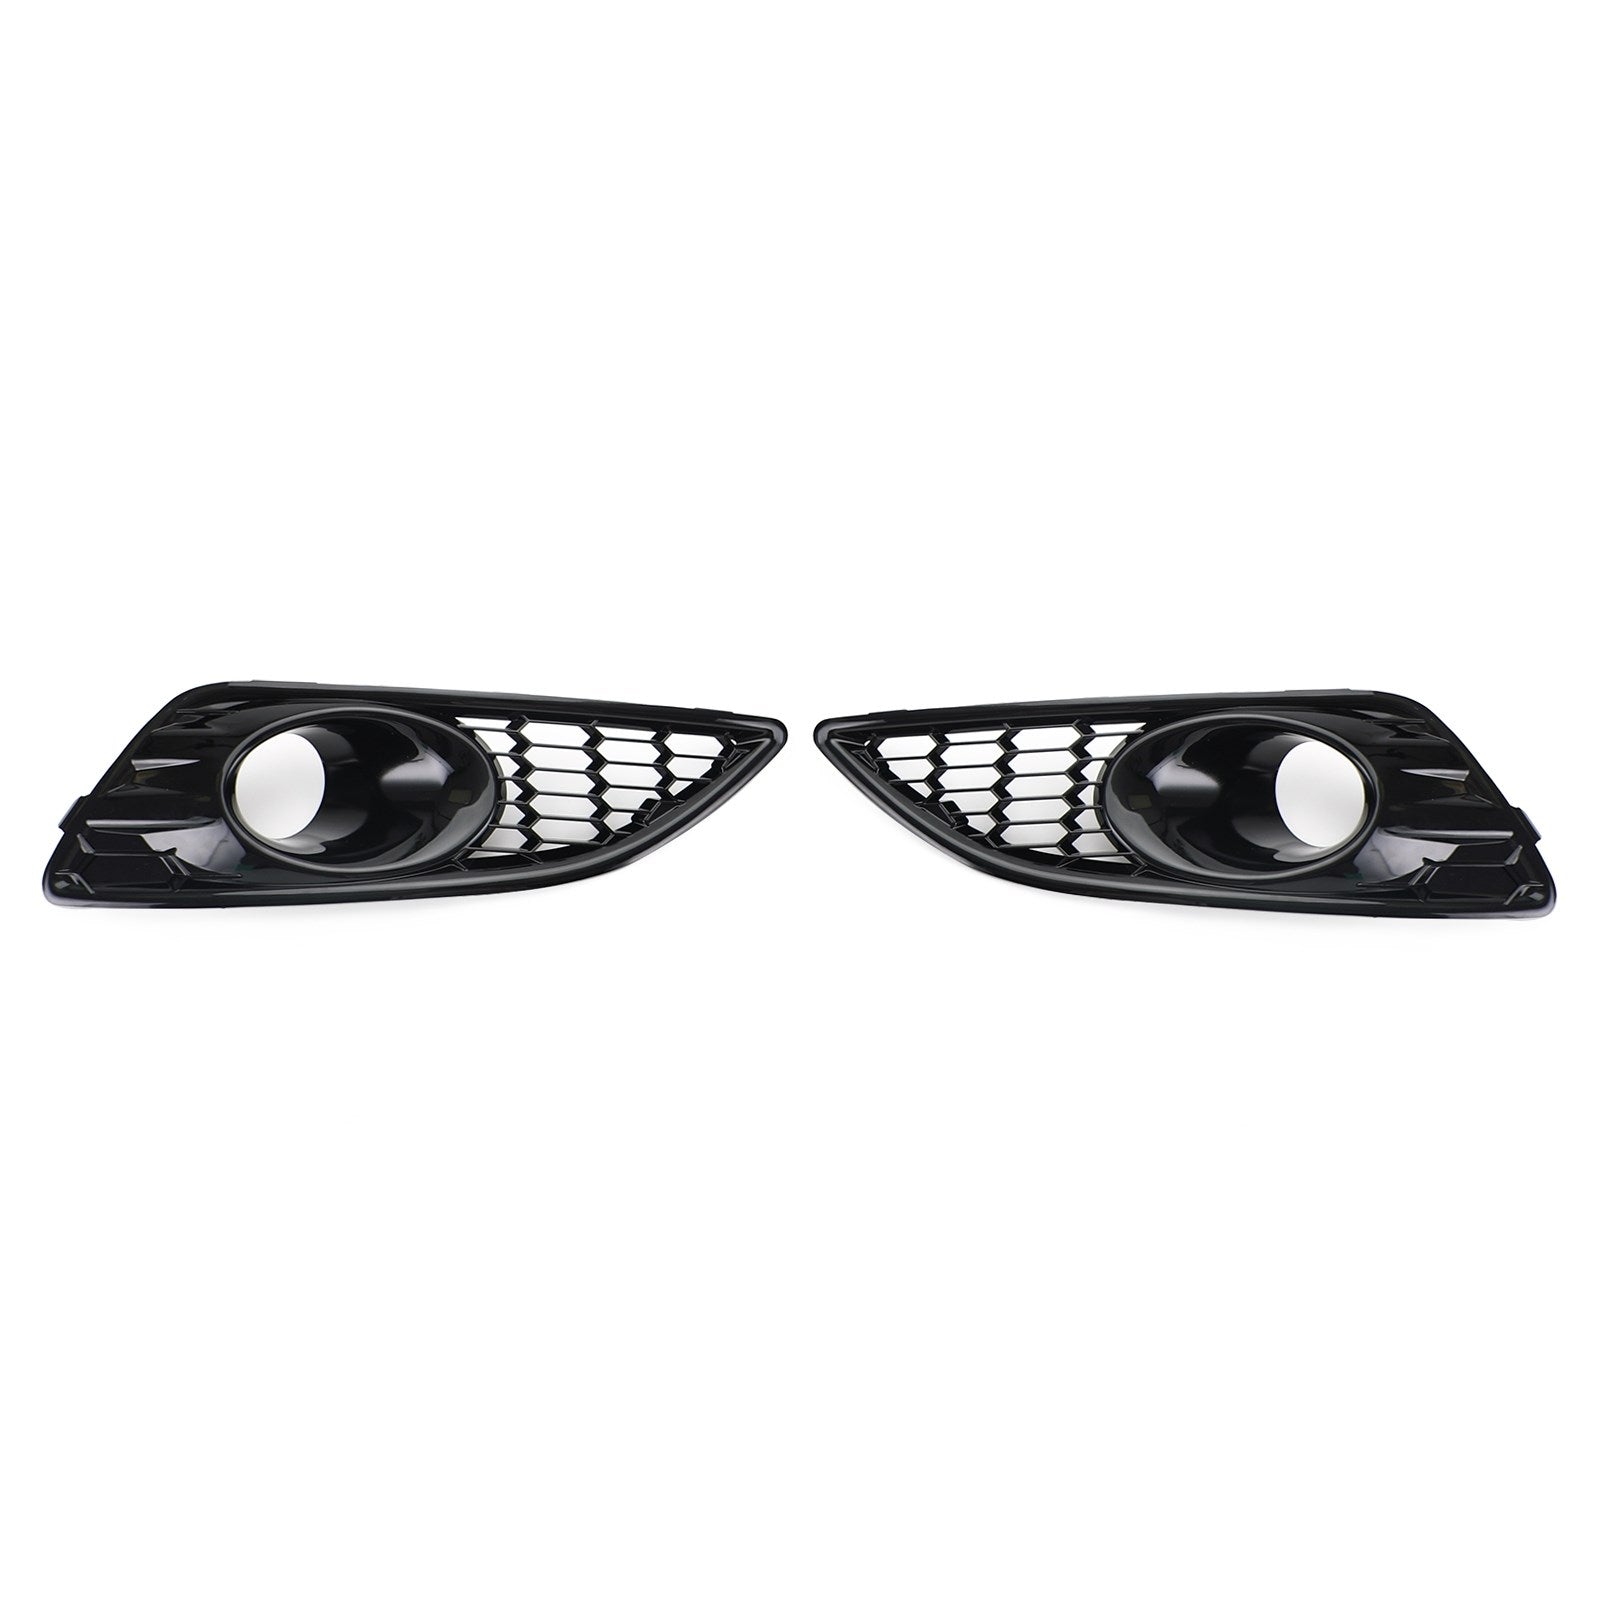 Paire de calandre noir brillant avant antibrouillard couvercle de lampe pour Ford Fiesta 2013-2017 générique